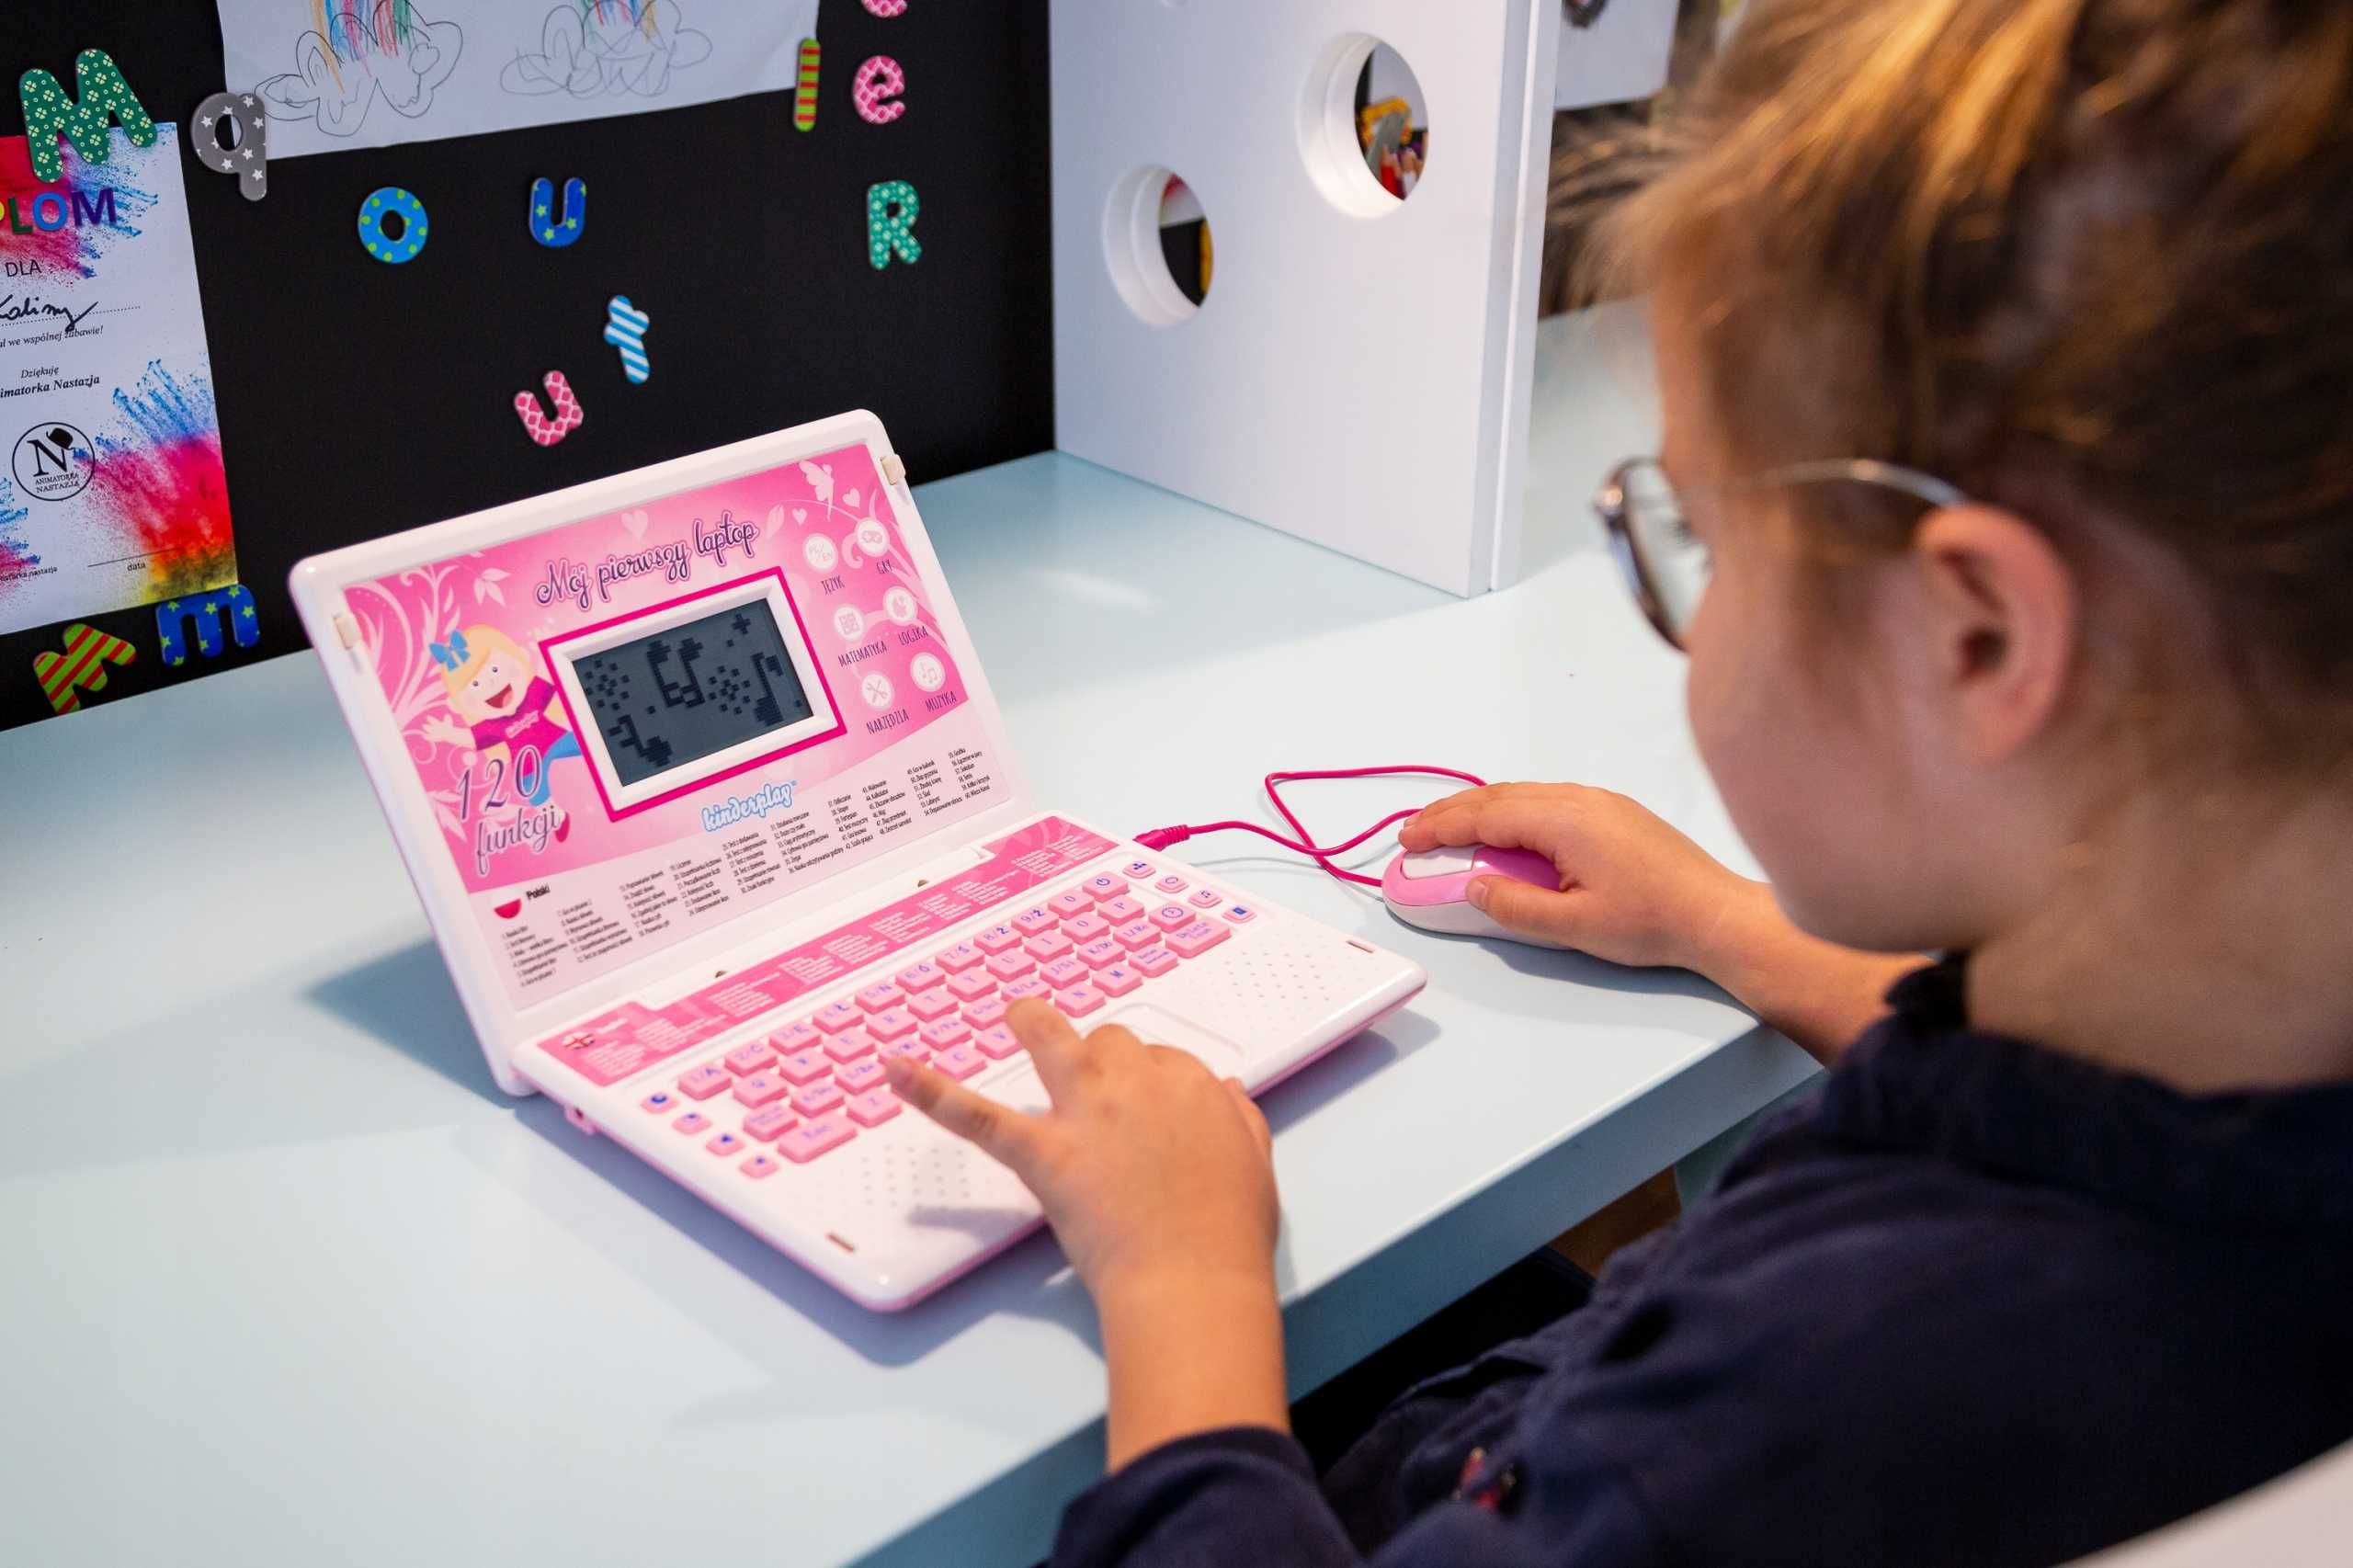 Laptop edukacyjny Kinderplay różowy 120 opcji